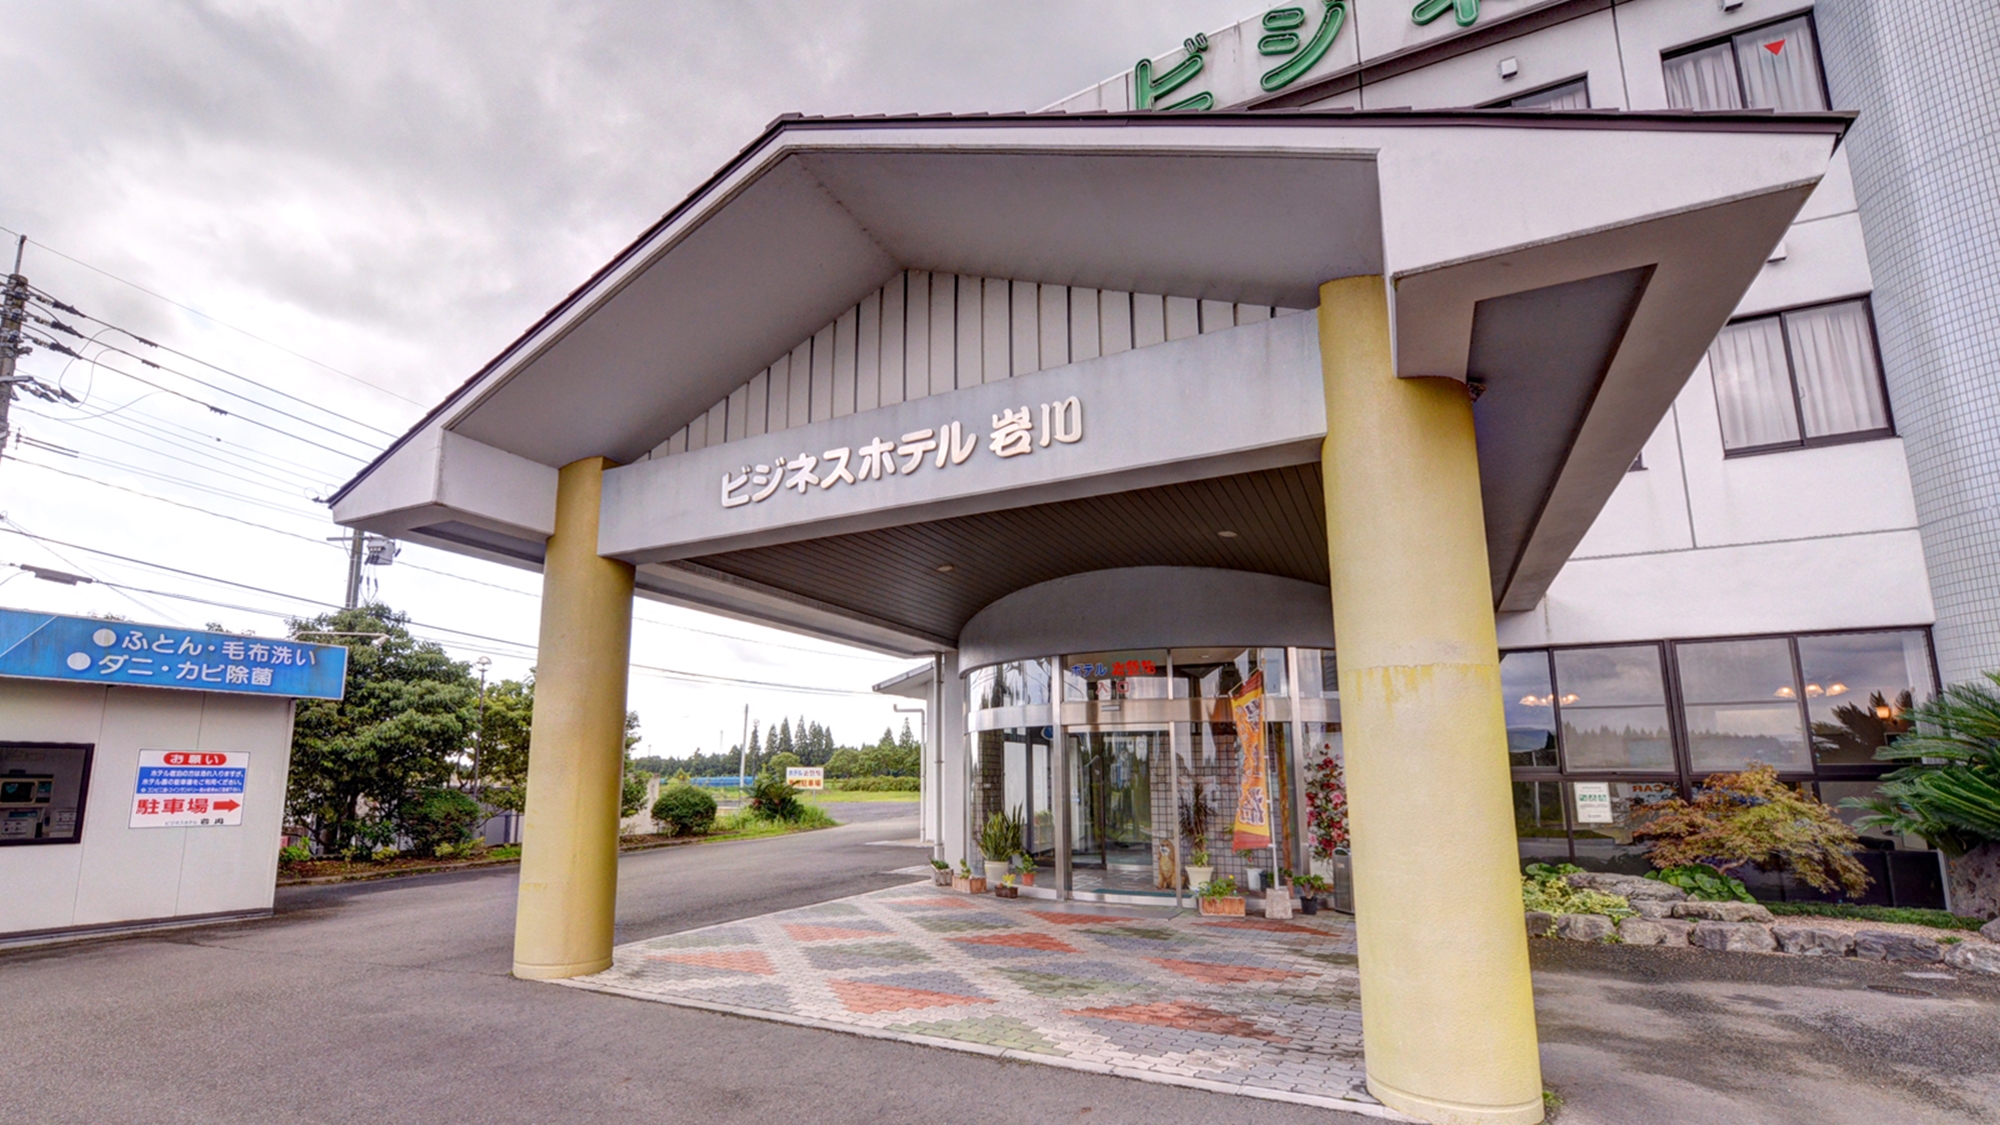 ビジネスホテル 岩川 image